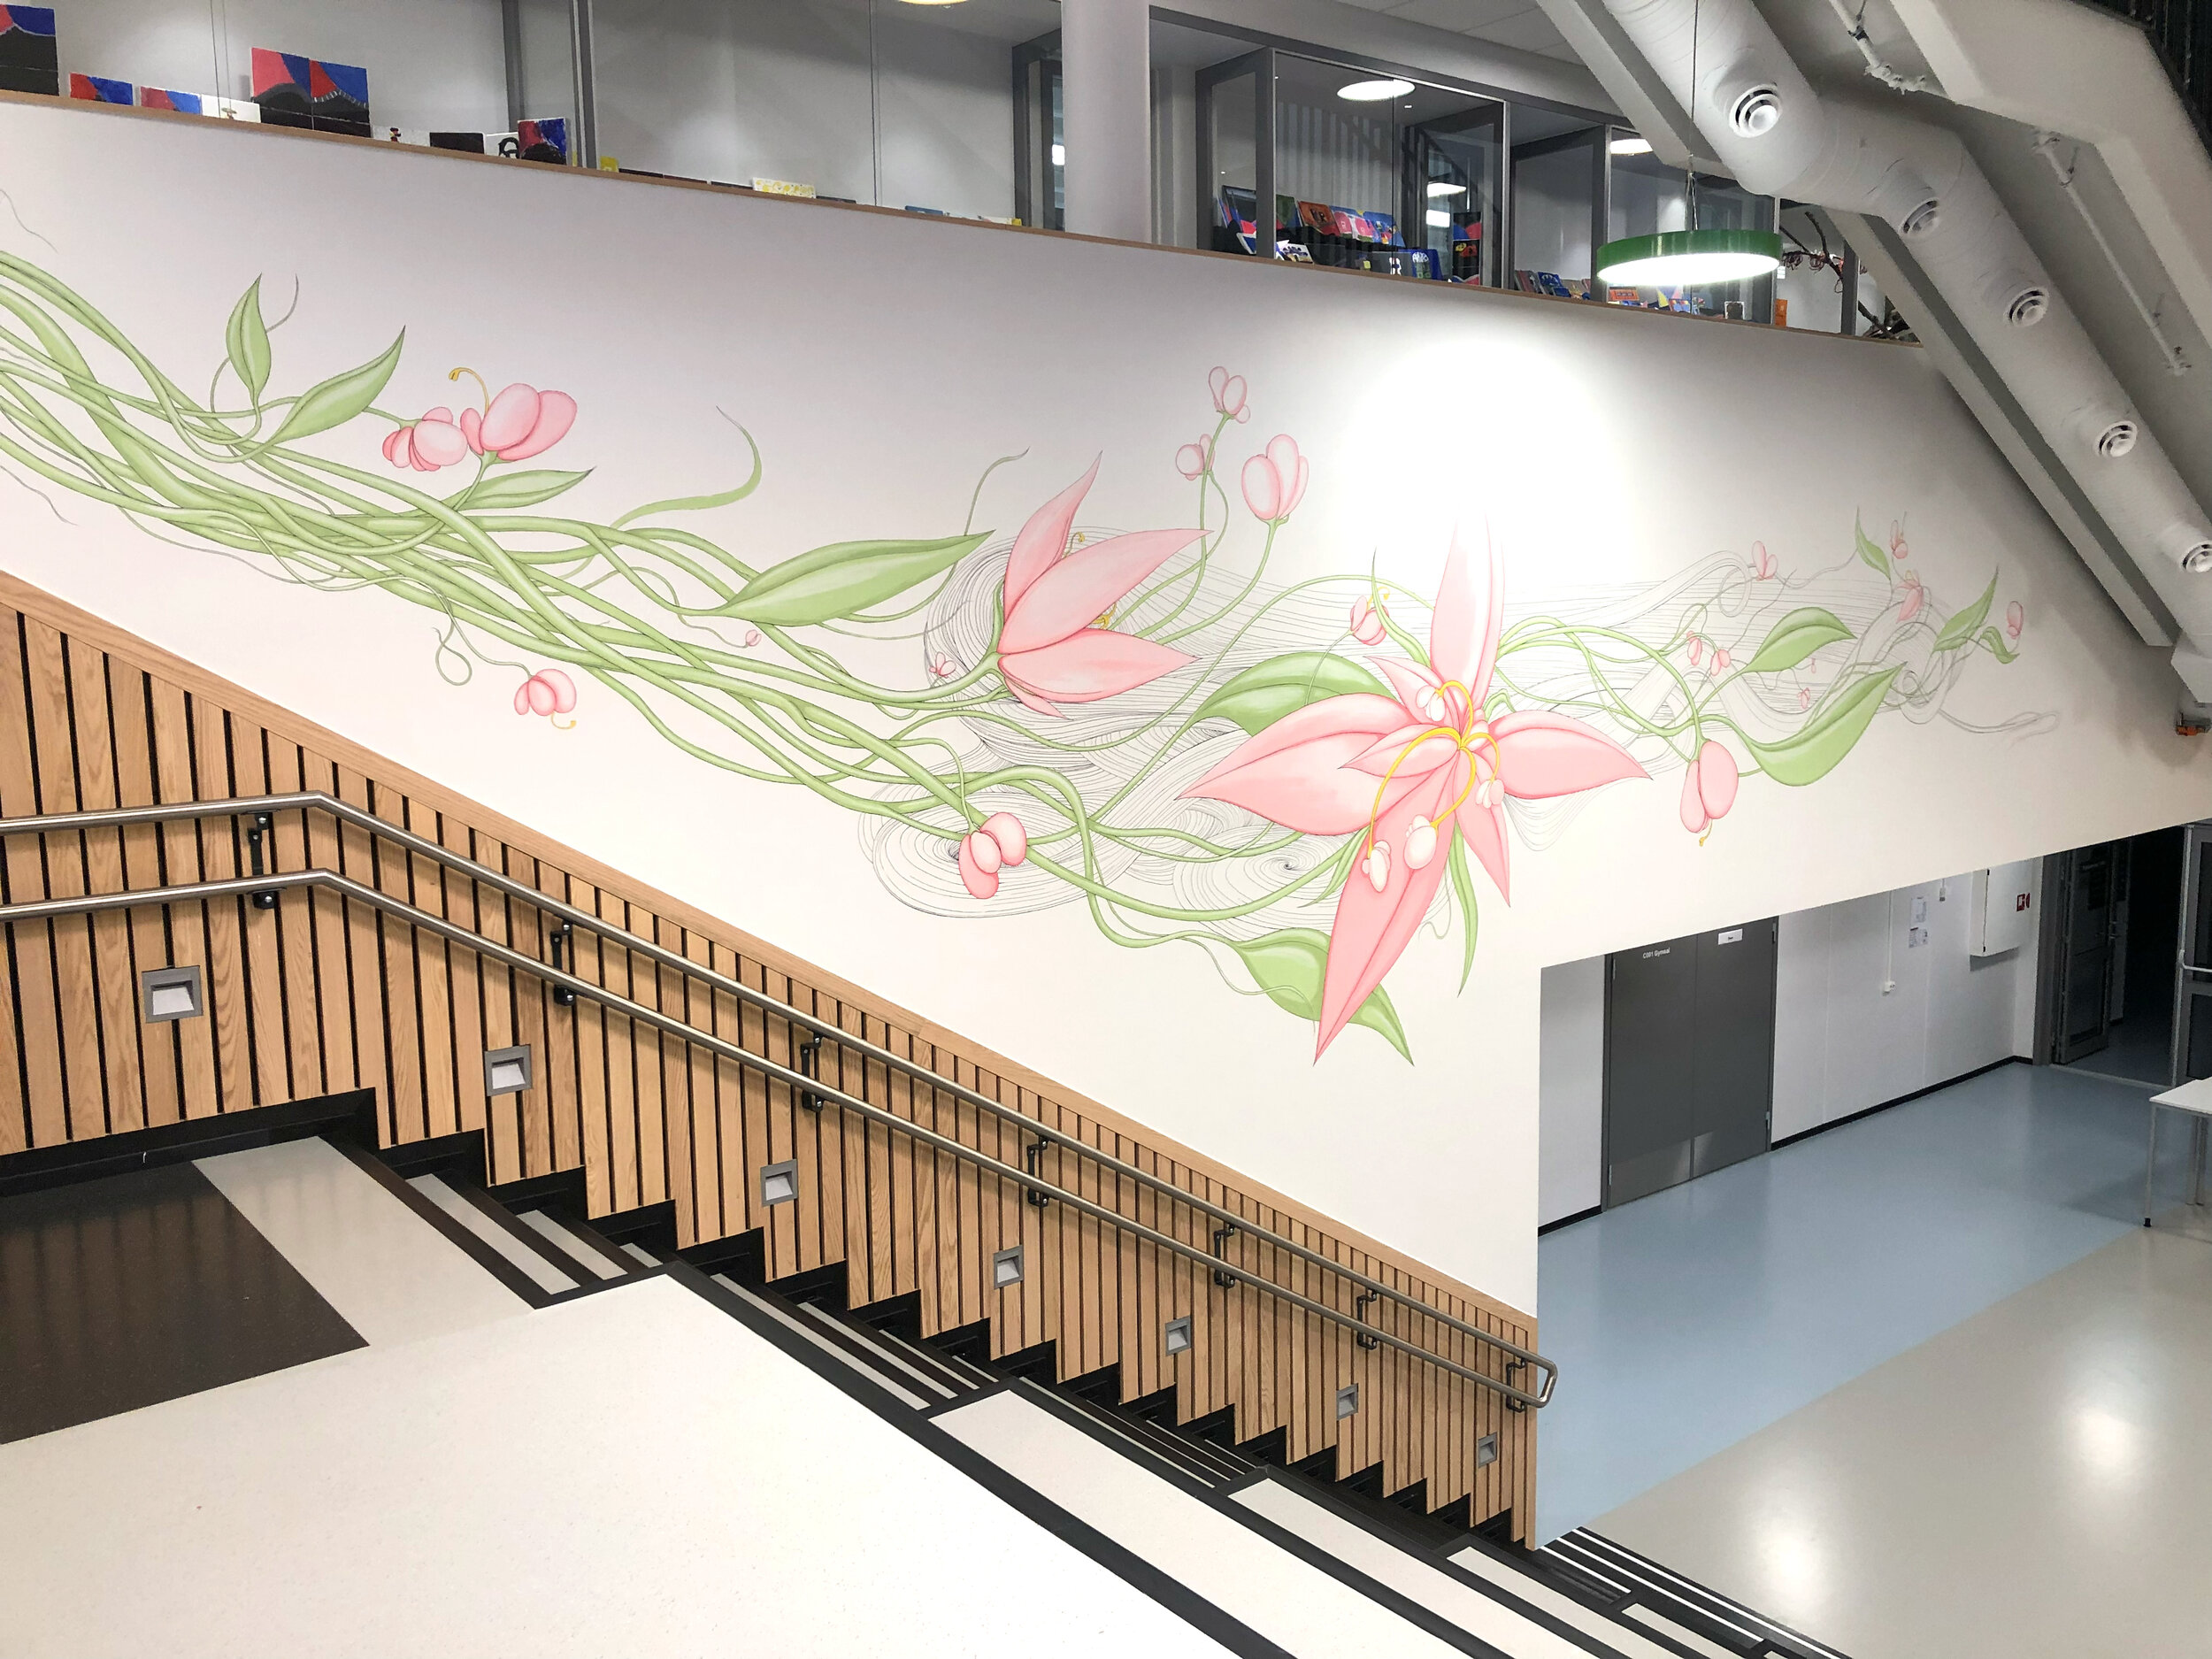  Installation view   Flowering , Harstad Elementary School, 2018    Photo: Kjell Ove Storvik 